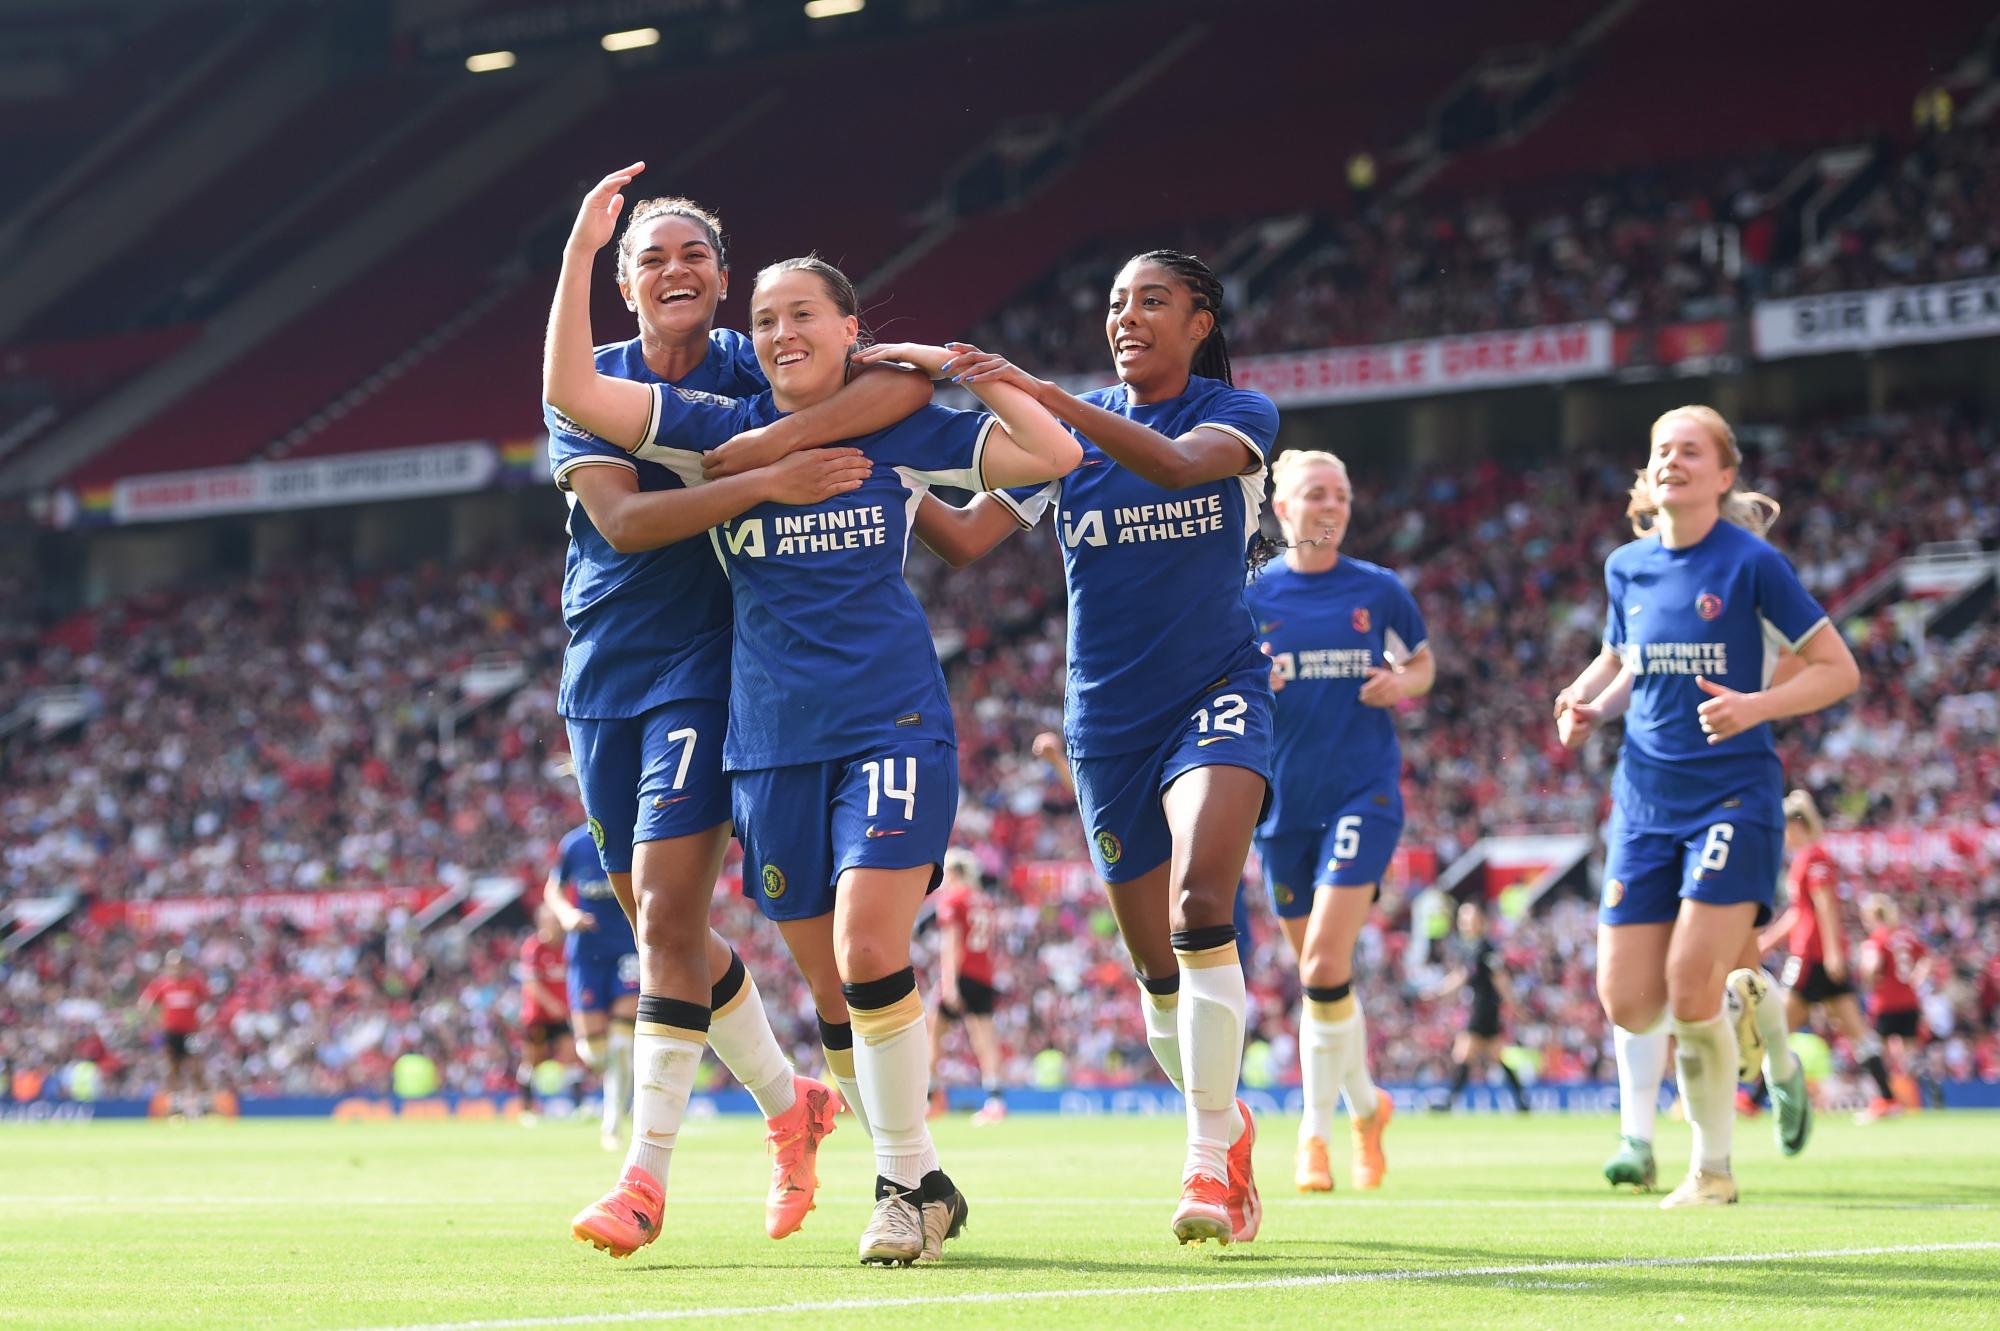 El Chelsea se coronó campeón de la Barclays Women’s Super League al derrotar contundentemente al Manchester United con un marcador de 6-0. Este triunfo permitió a Mia Fishel sumar otro título de